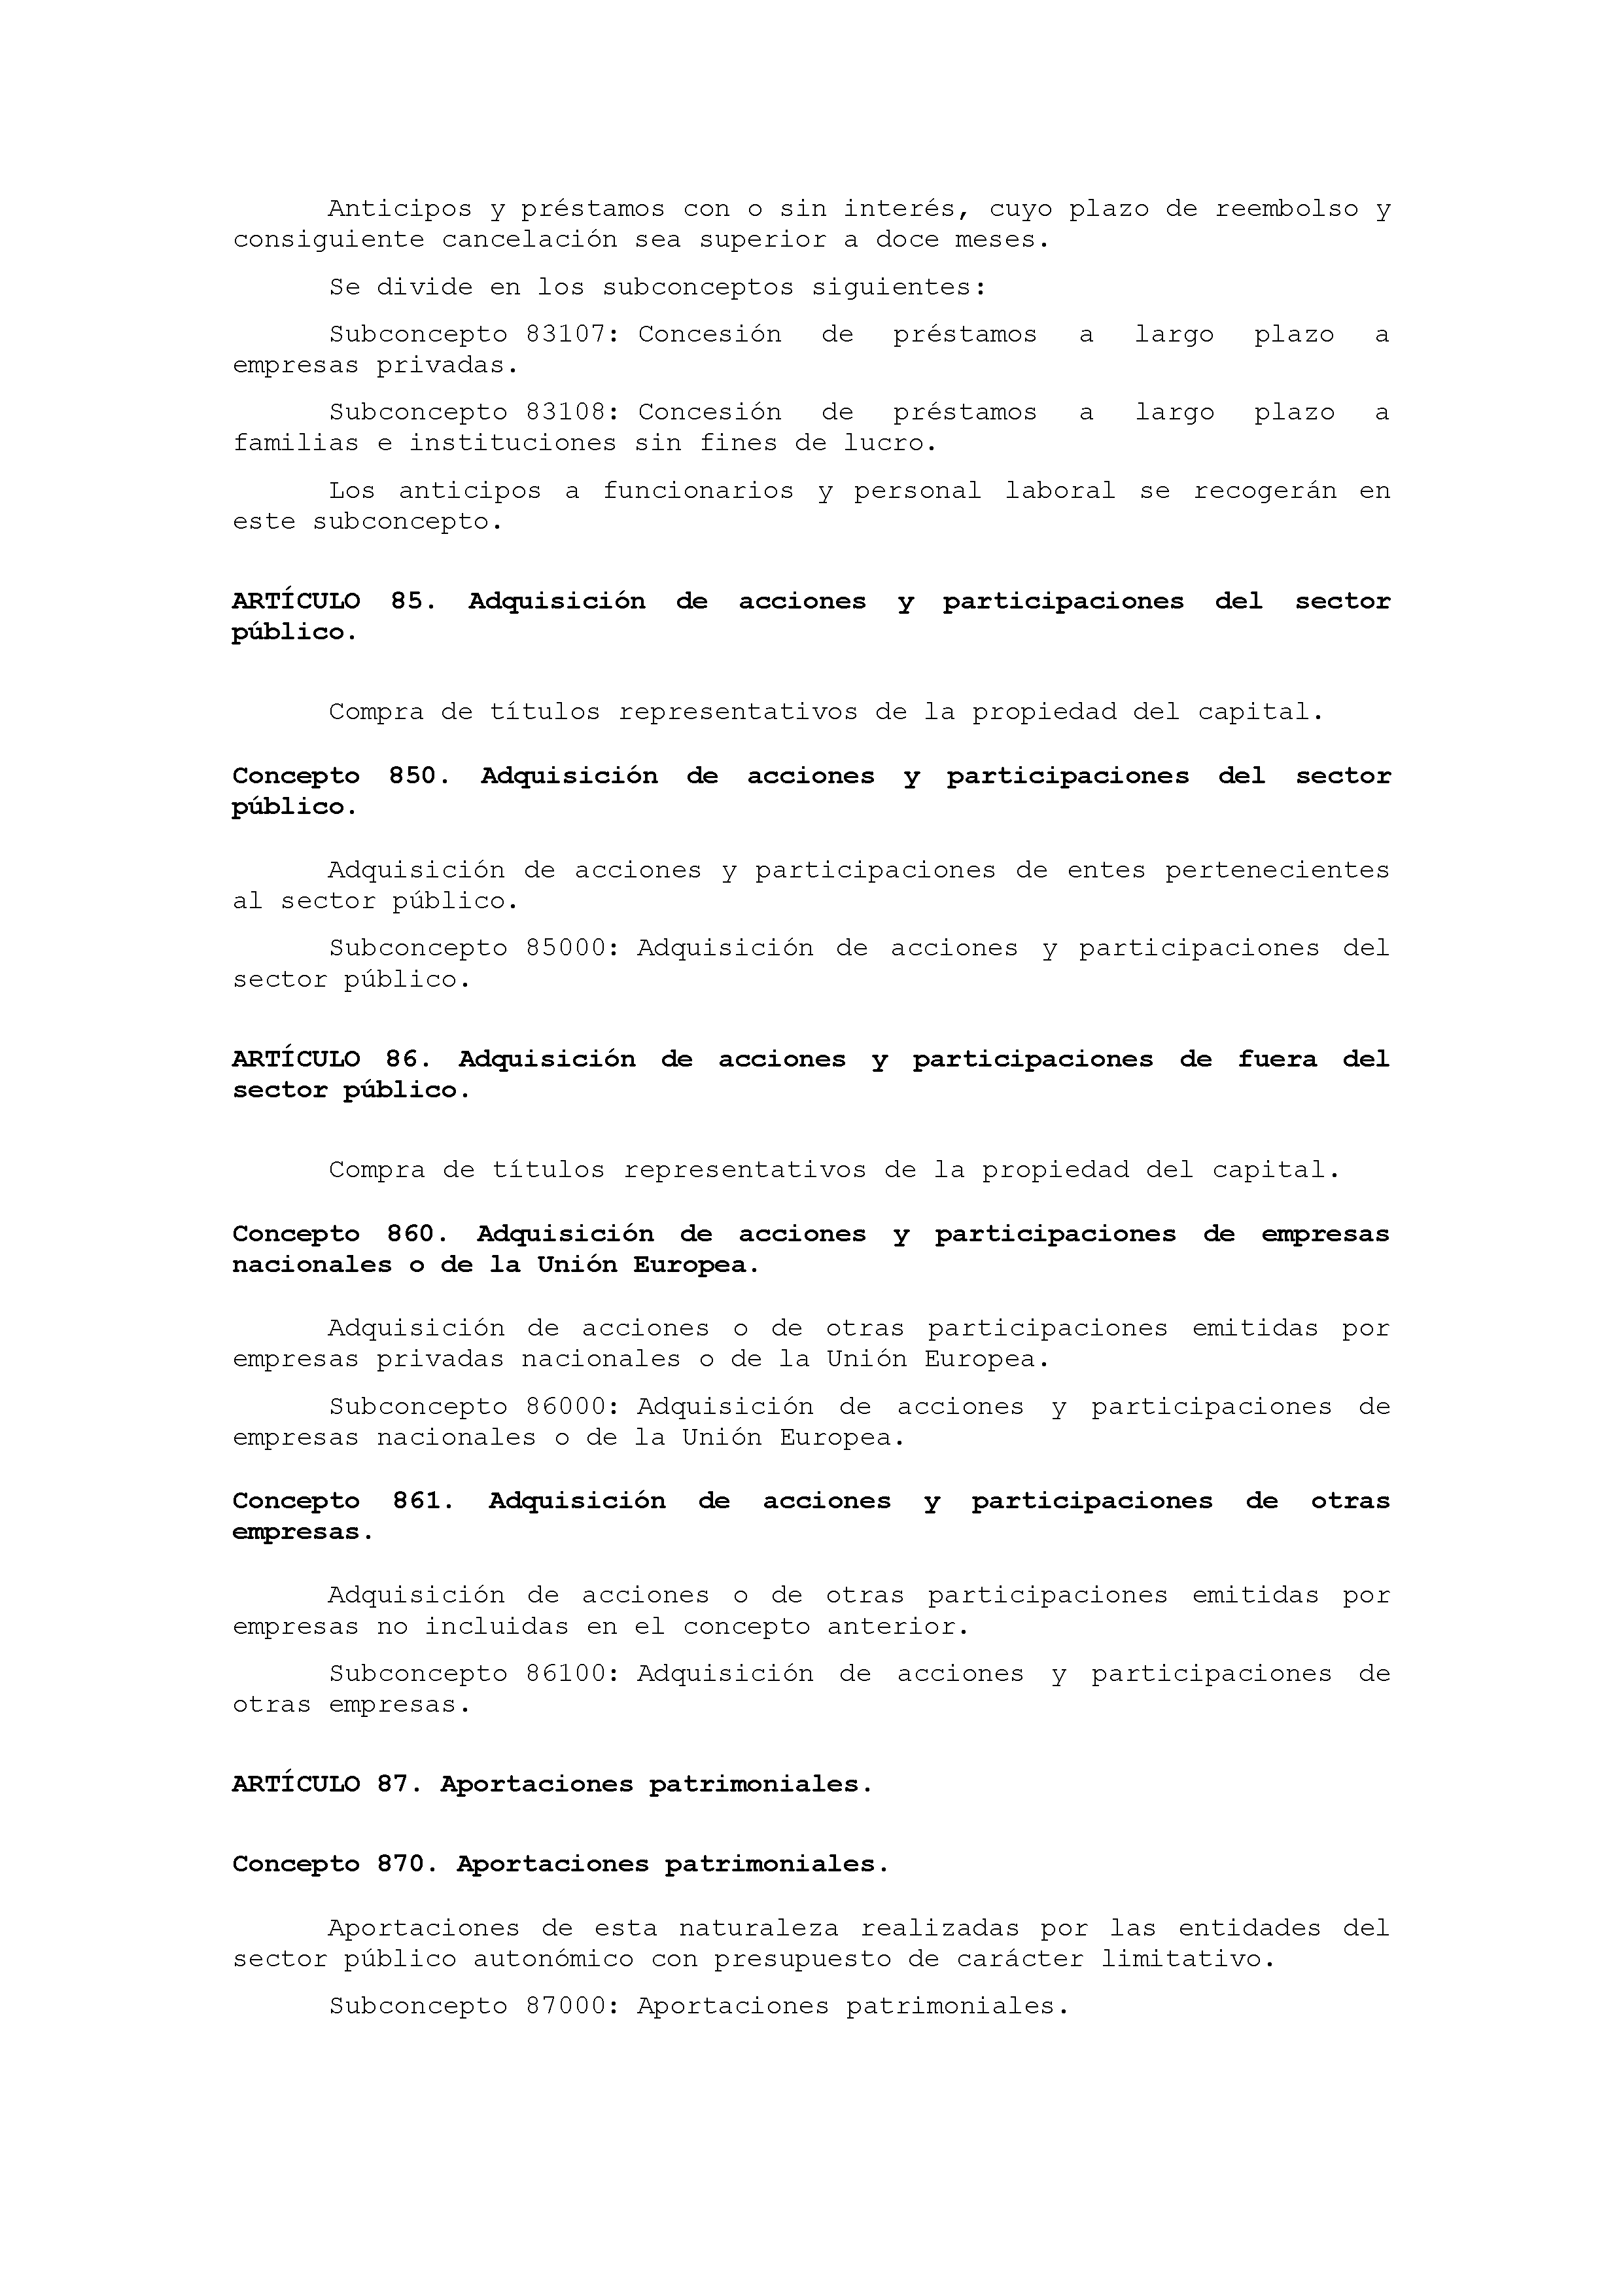 ANEXO IX CÓDIGO DE LA CLASIFICACIÓN ECONÓMICA DE LOS GASTOS PÚBLICOS Pag 45